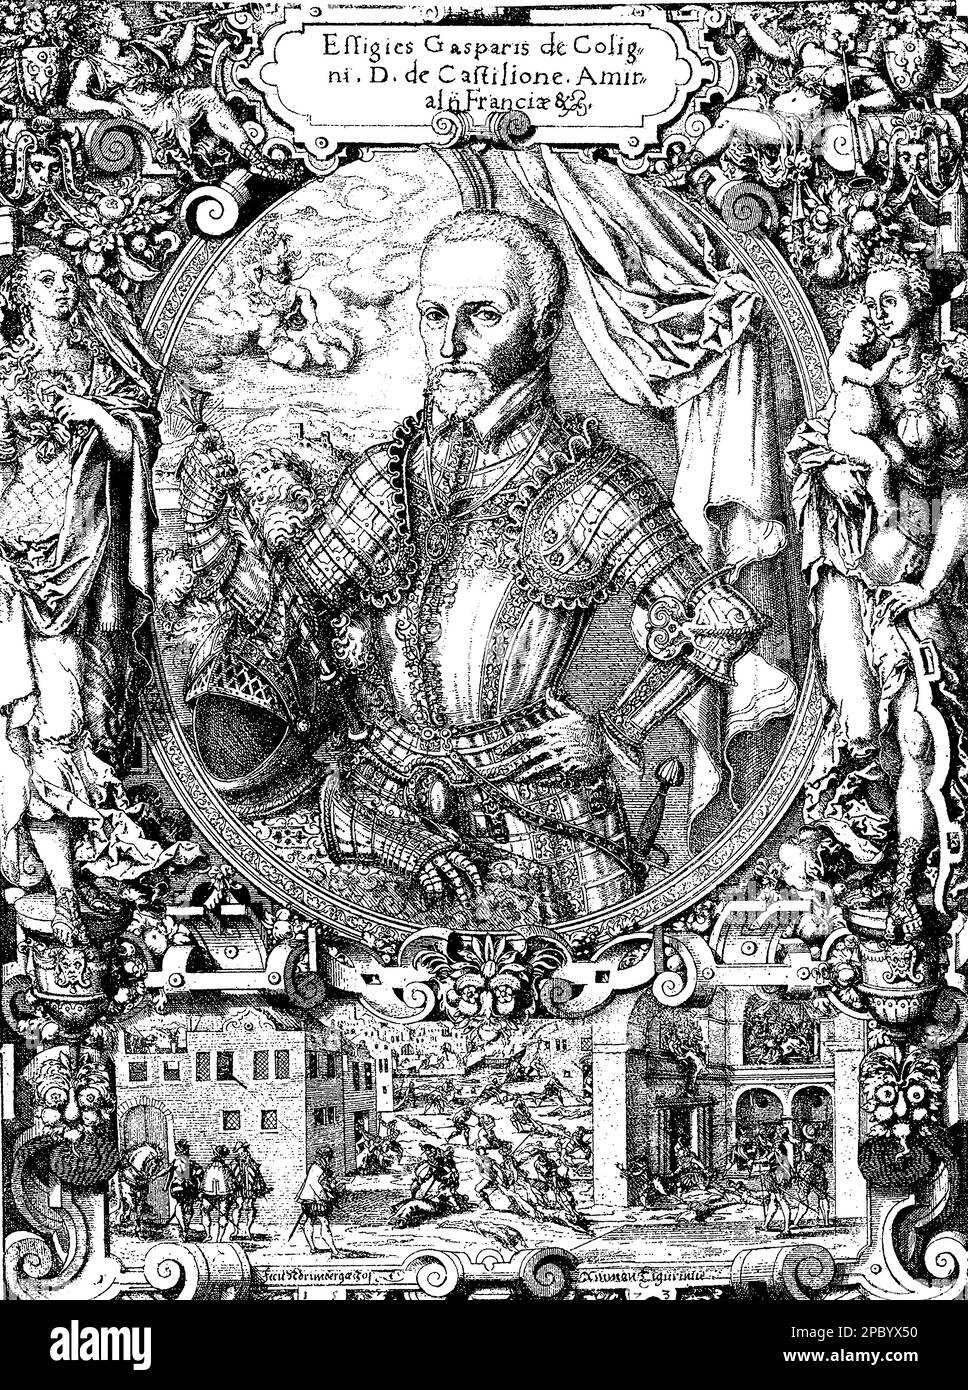 Gaspard de Coligny était un noble et un amiral français datant de 16th ans qui joua un rôle central dans les guerres de religion françaises. Il était un chef Huguenot et un défenseur de la tolérance religieuse, mais il fut finalement assassiné pendant la Saint Le massacre de Bartholomée Banque D'Images